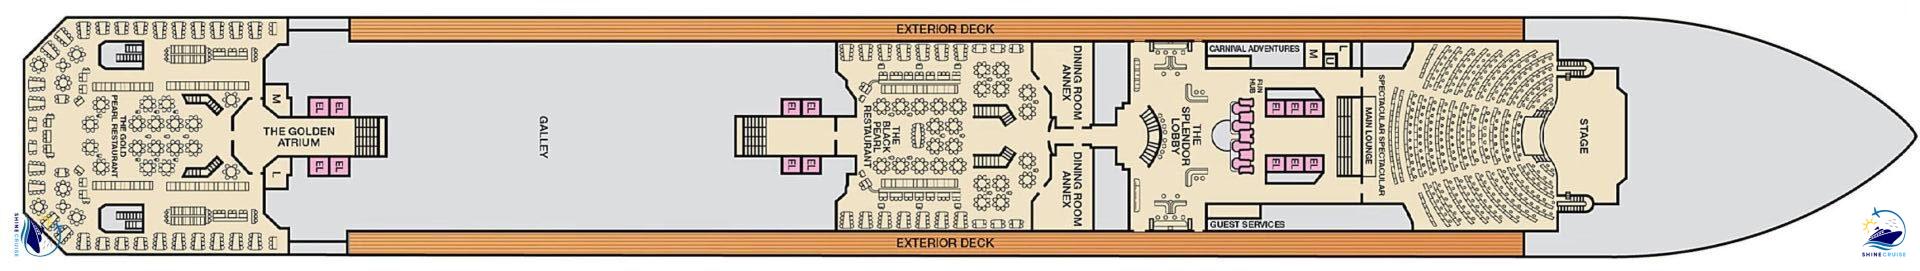 Carnival Splendor Deck Plans 3